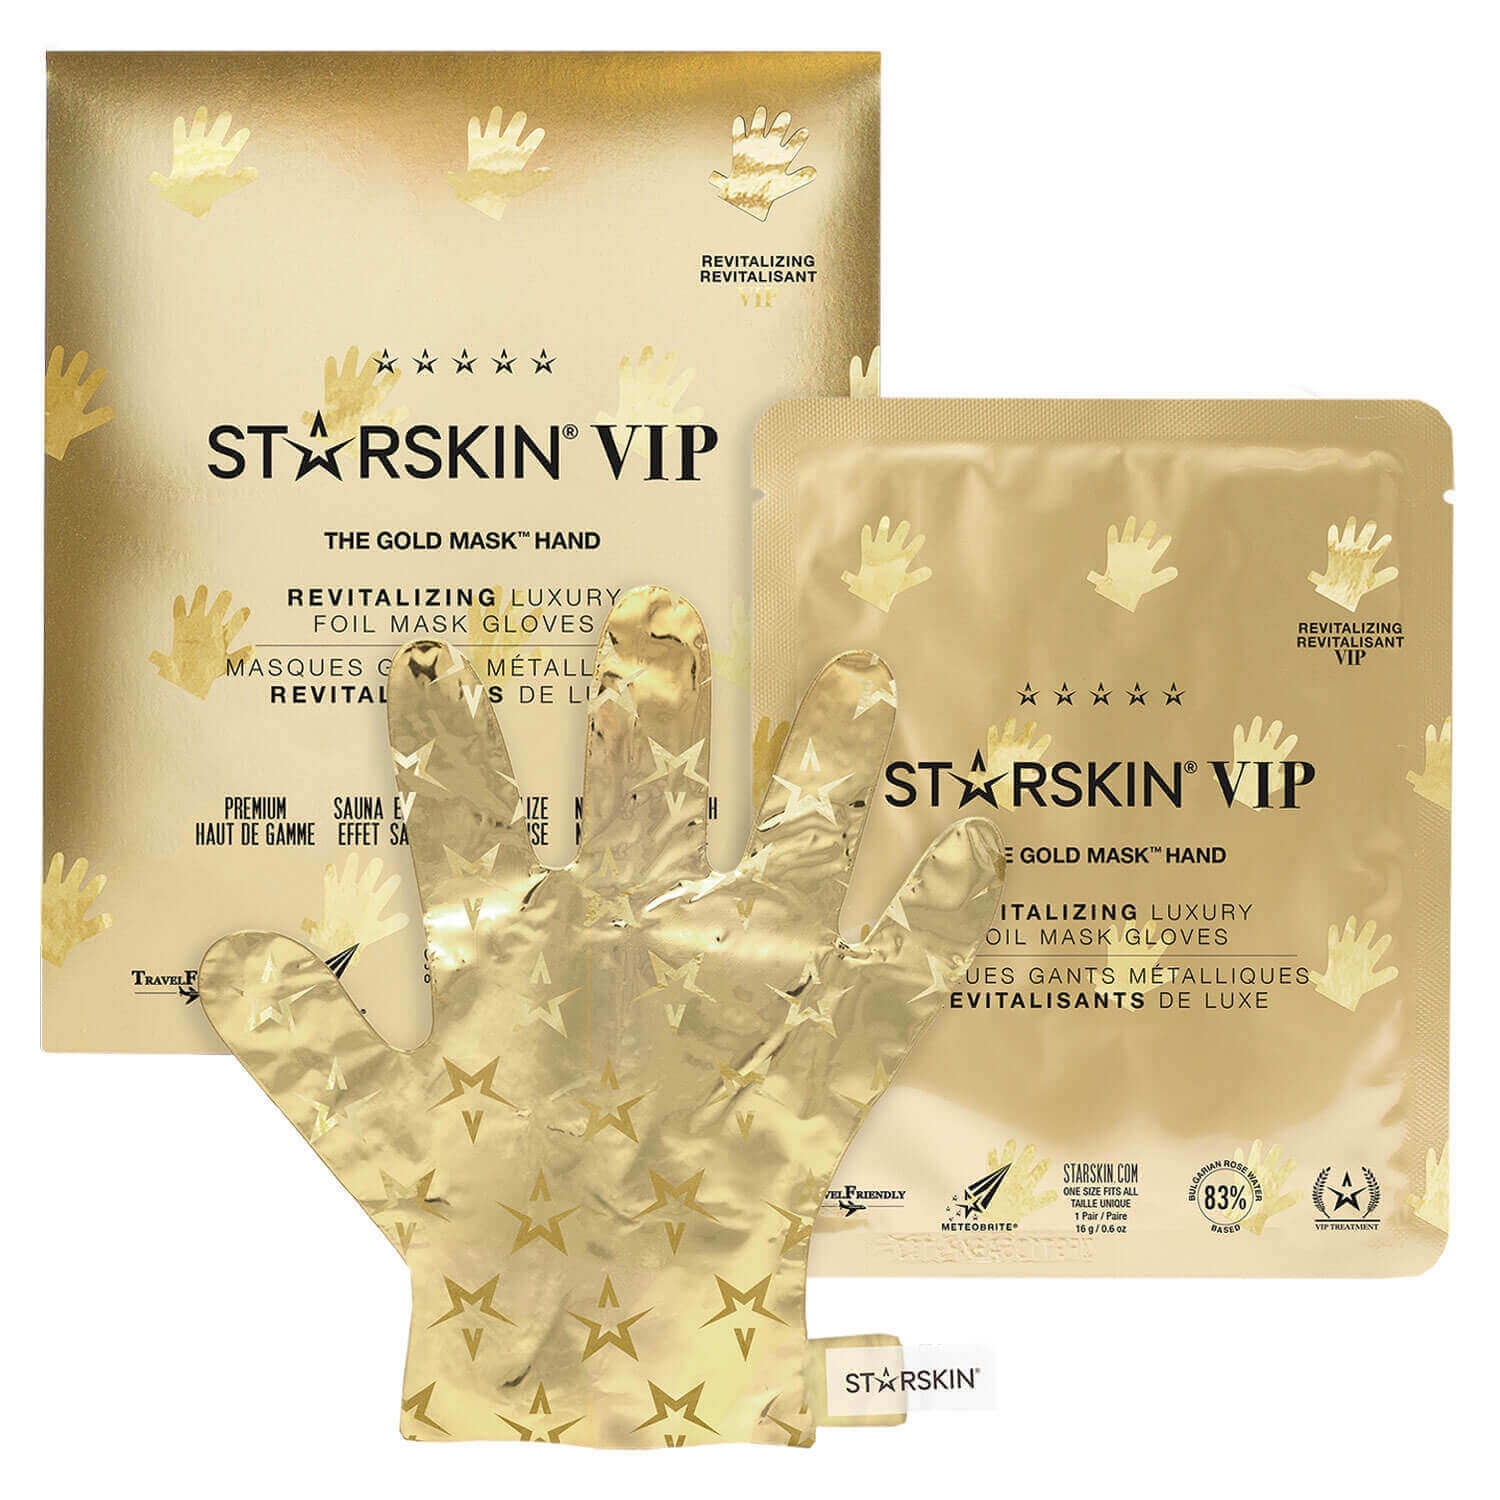 Produktbild von STARSKIN - VIP The Gold Revitalizing Hand Mask